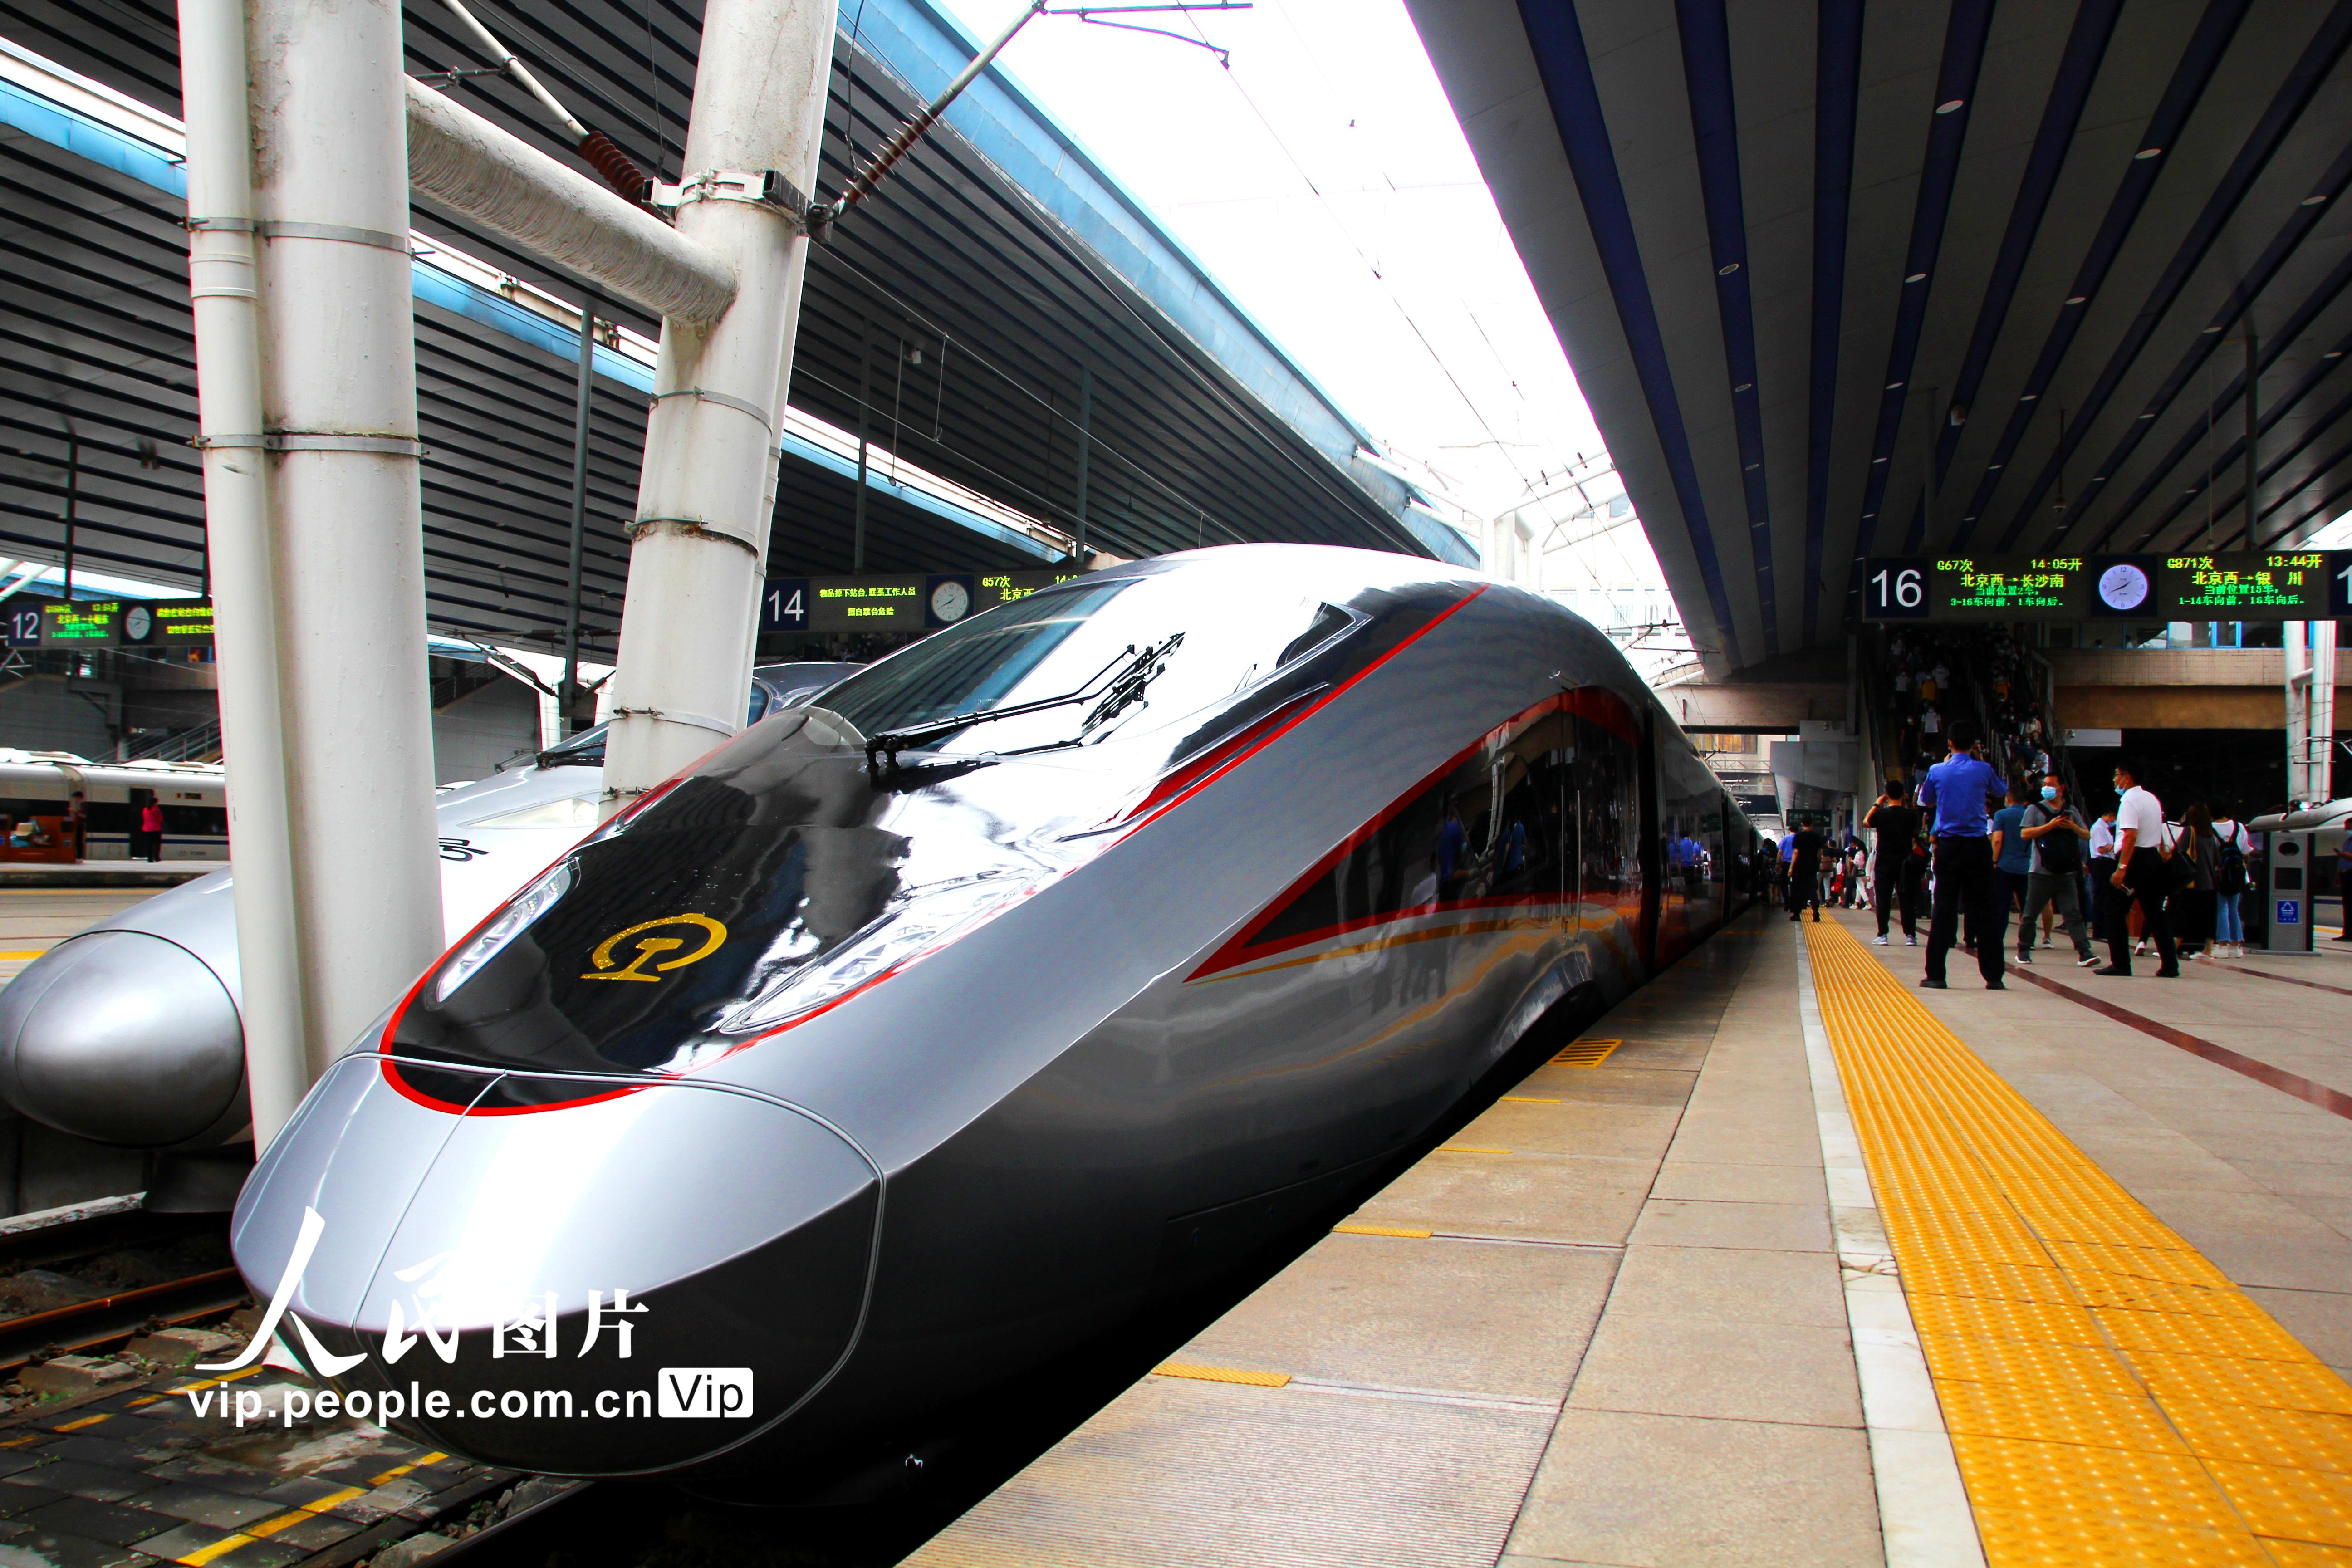 復興號智能動車組首次在京廣高鐵線開行